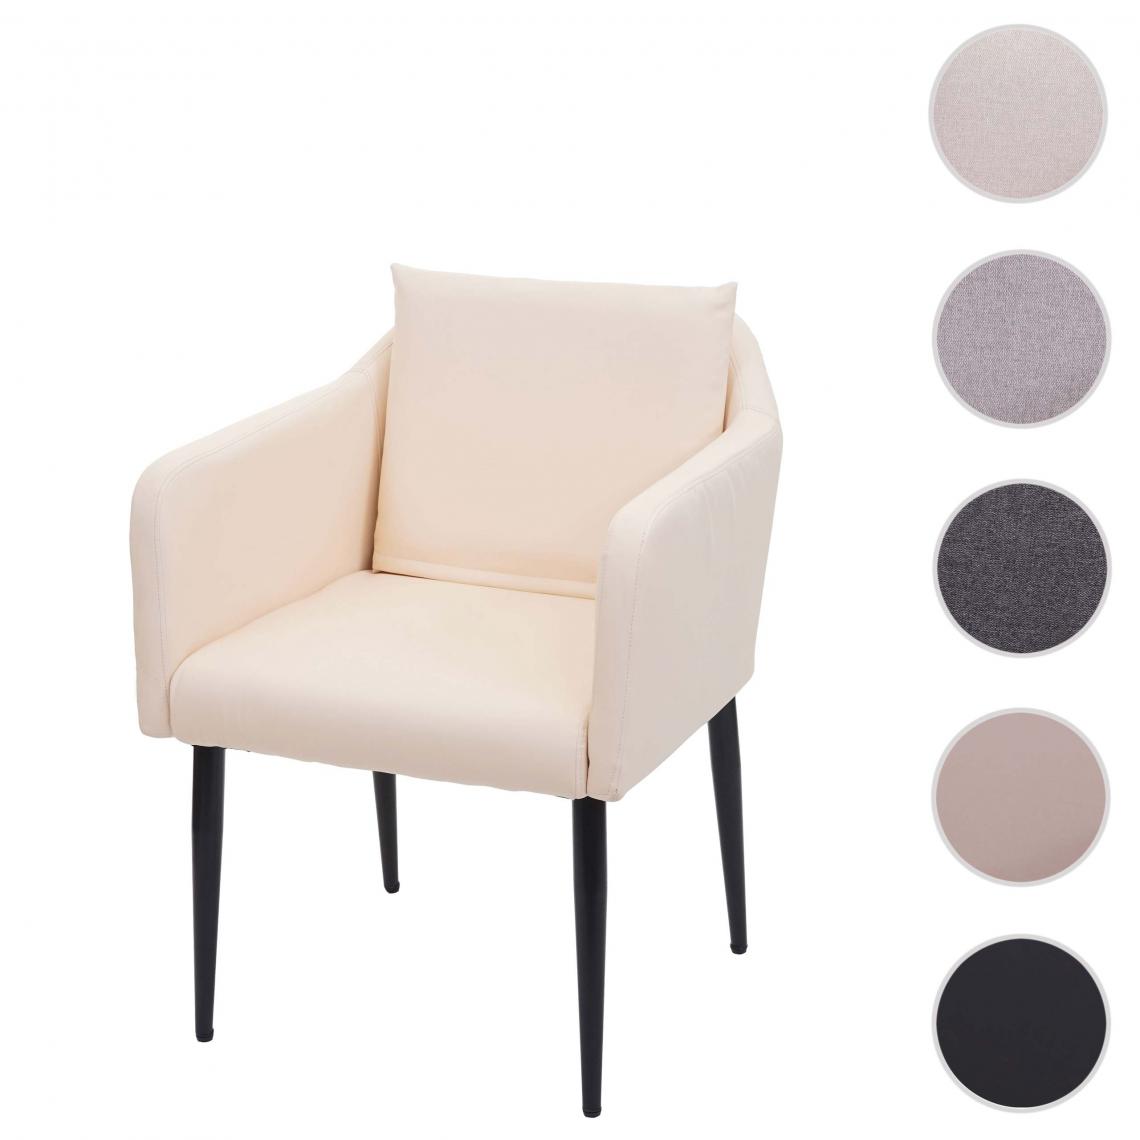 Mendler - Chaise de salle à manger HWC-H93, chaise de cuisine chaise longue ~ similicuir crème-beige - Chaises